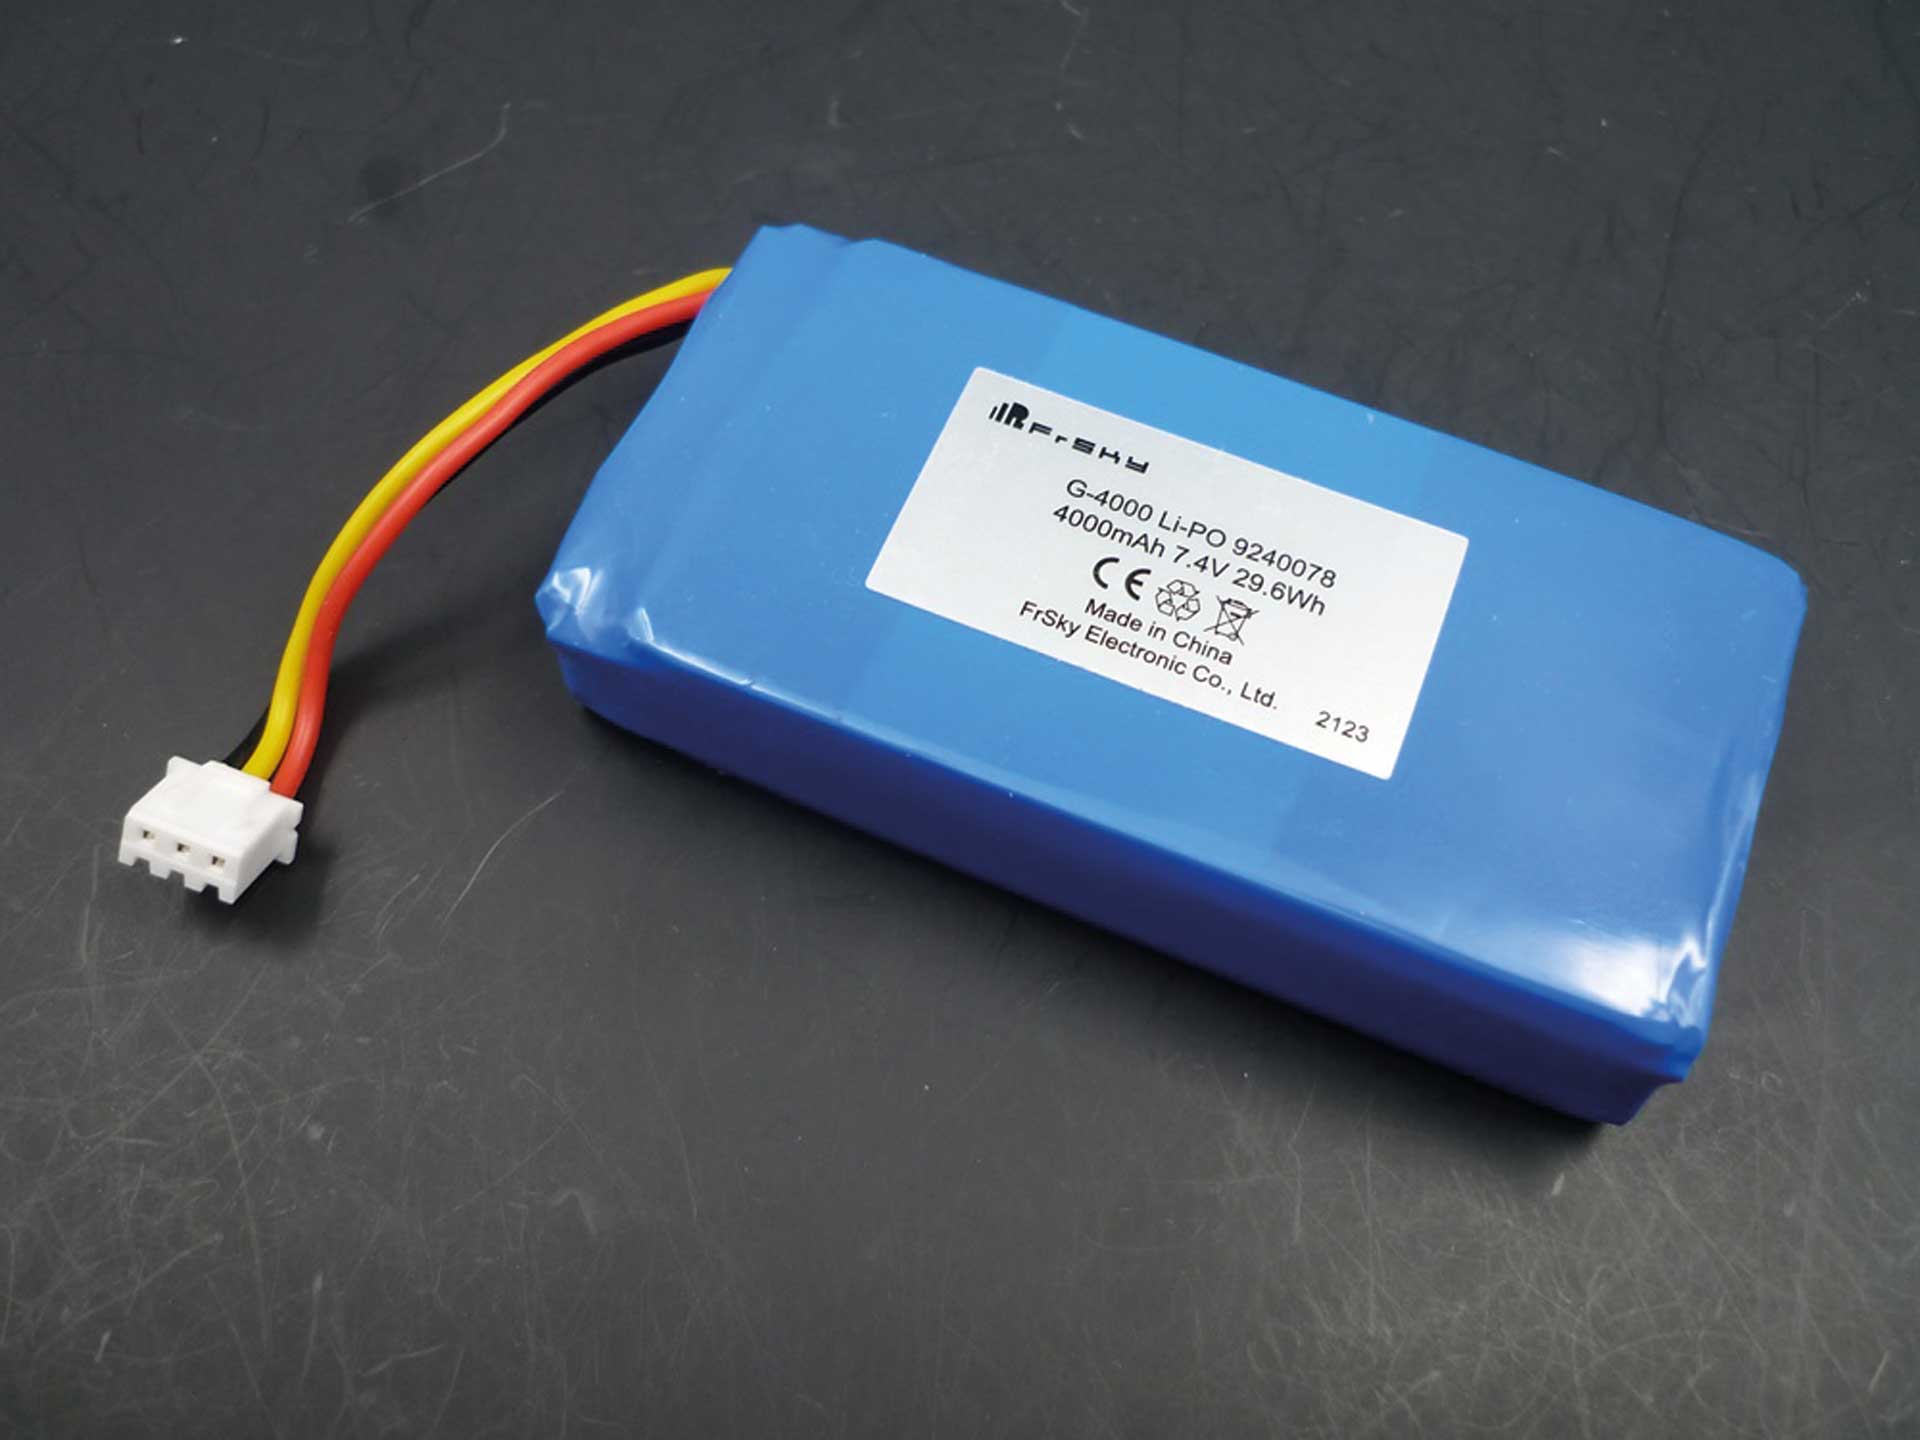 7.4V 4000mAh 2S LiPo Transmitter Battery